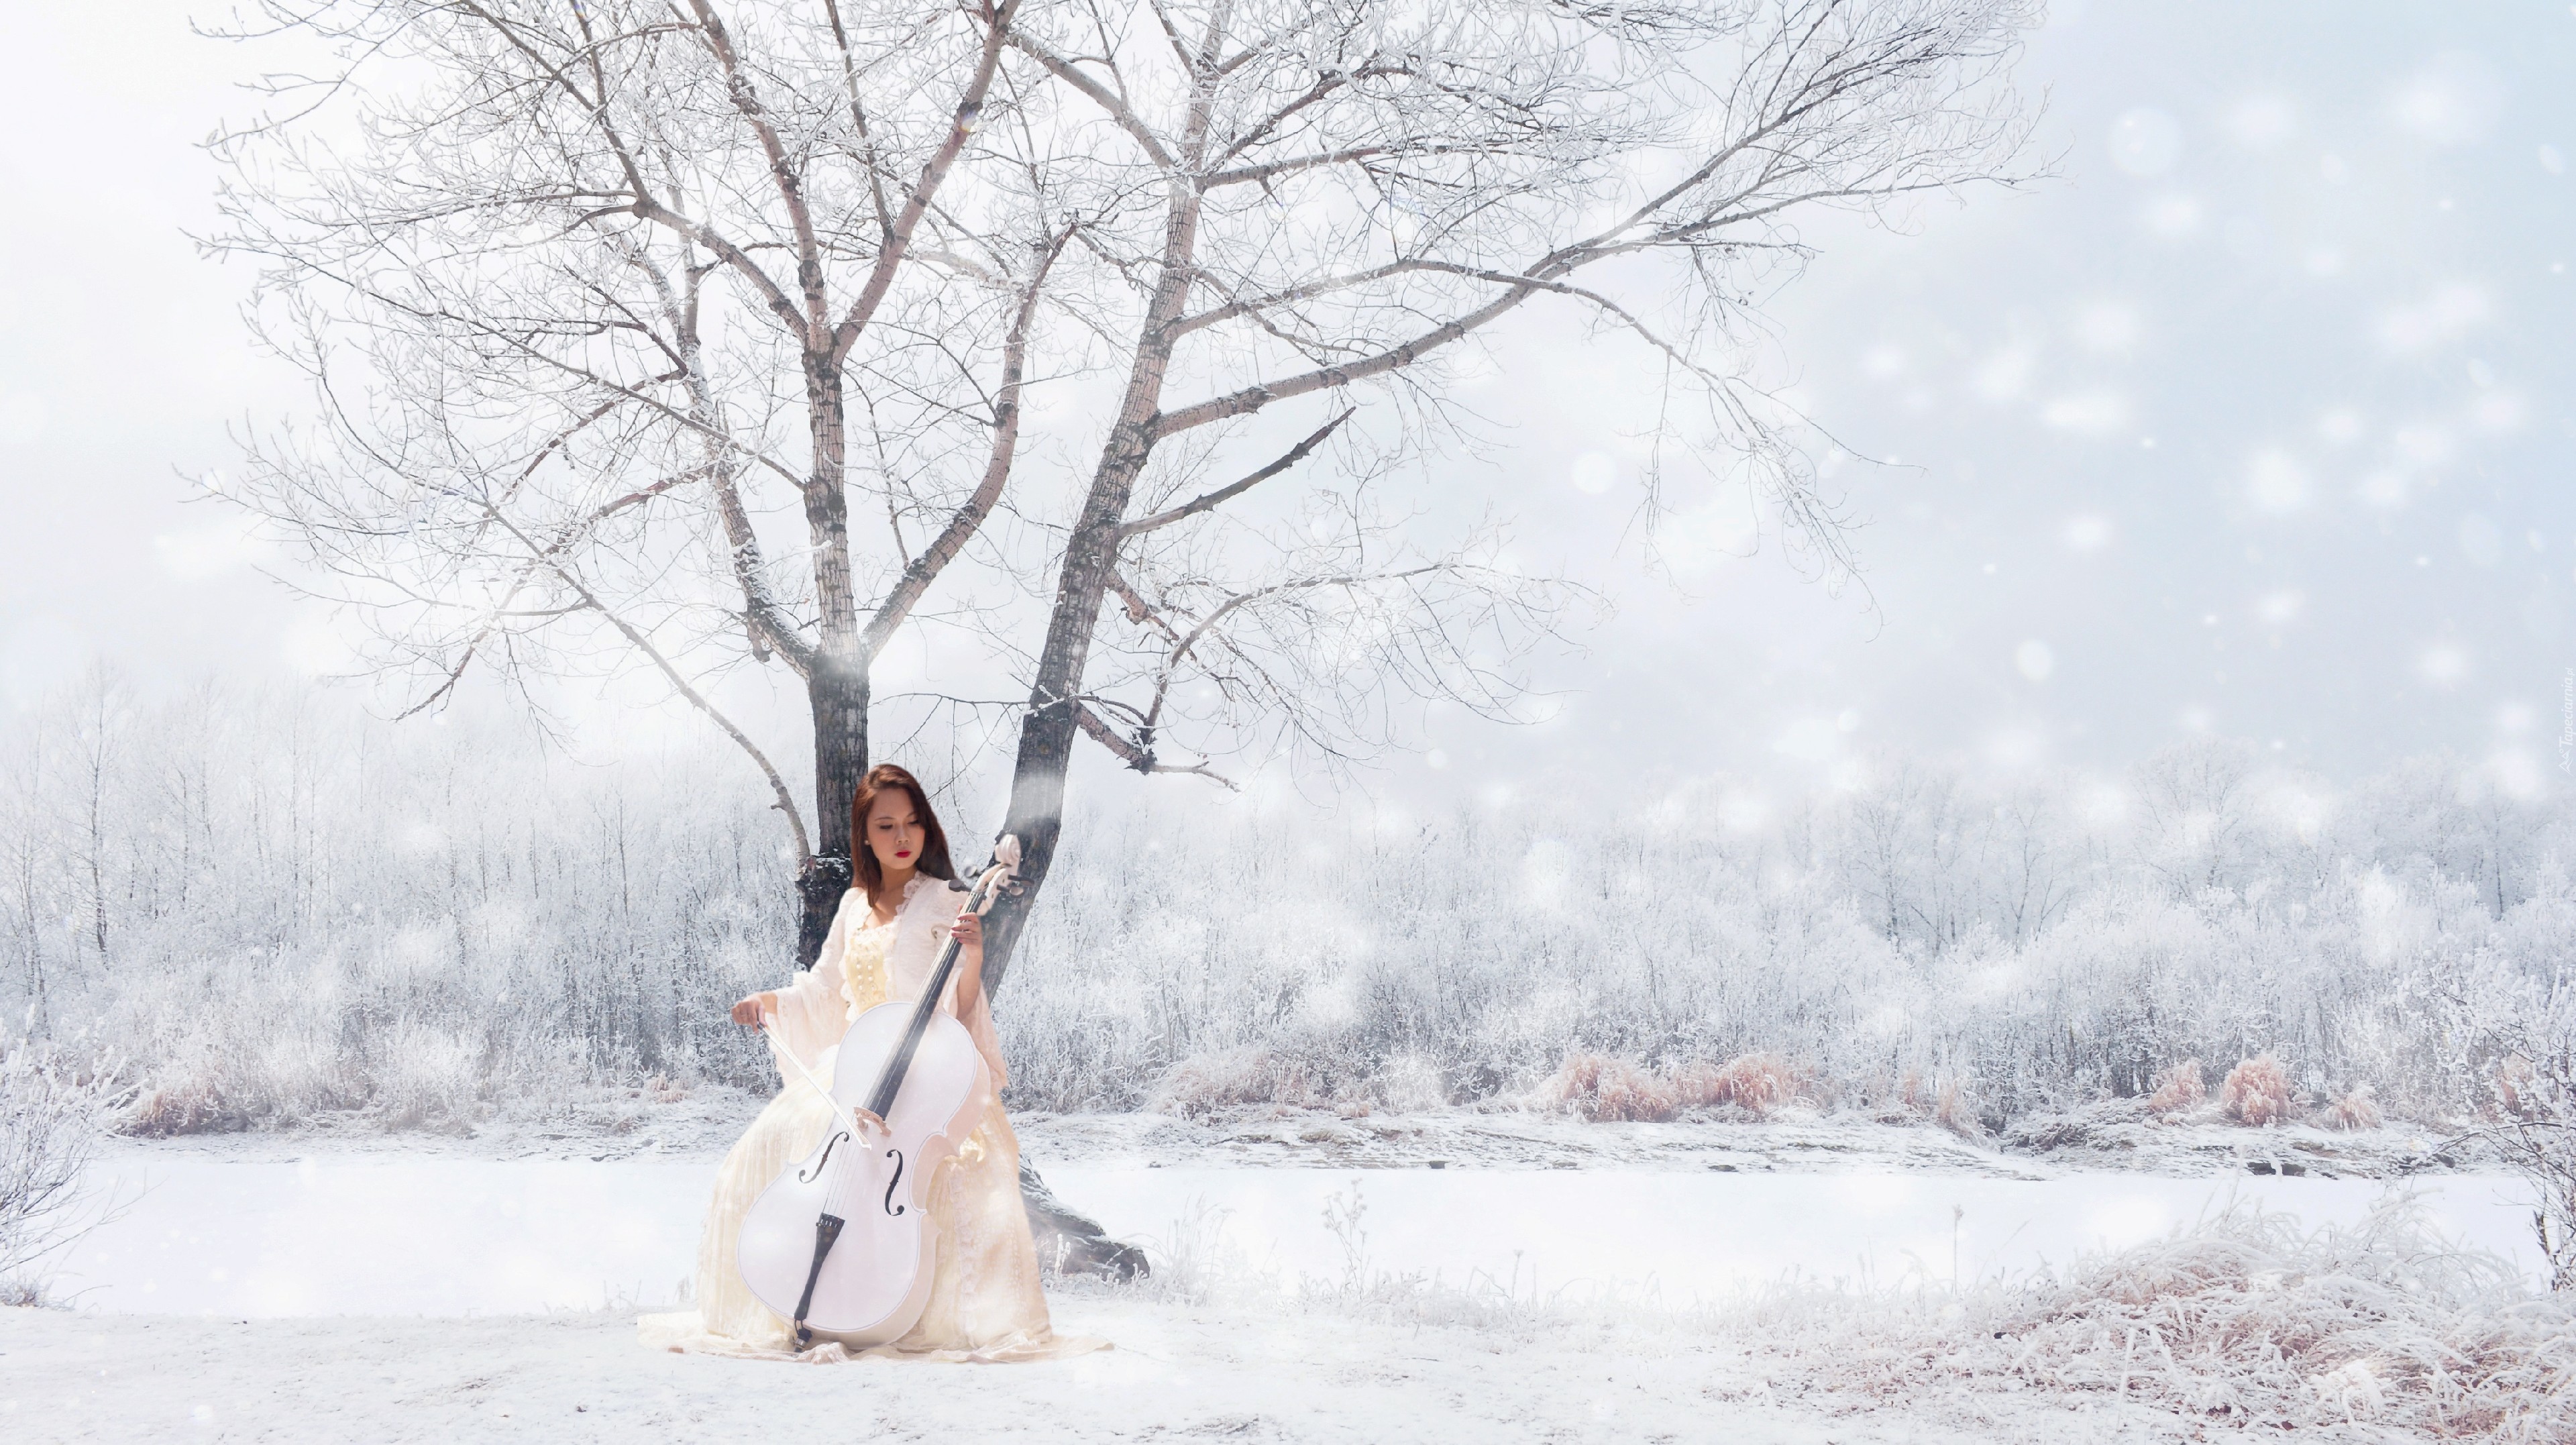 Он был красивым на фоне меня песня. Девушка в зимнем лесу. Девушка на зимнем пейзаже. Девушка зимой в снегу. Девушка на фоне зимнего пейзажа.